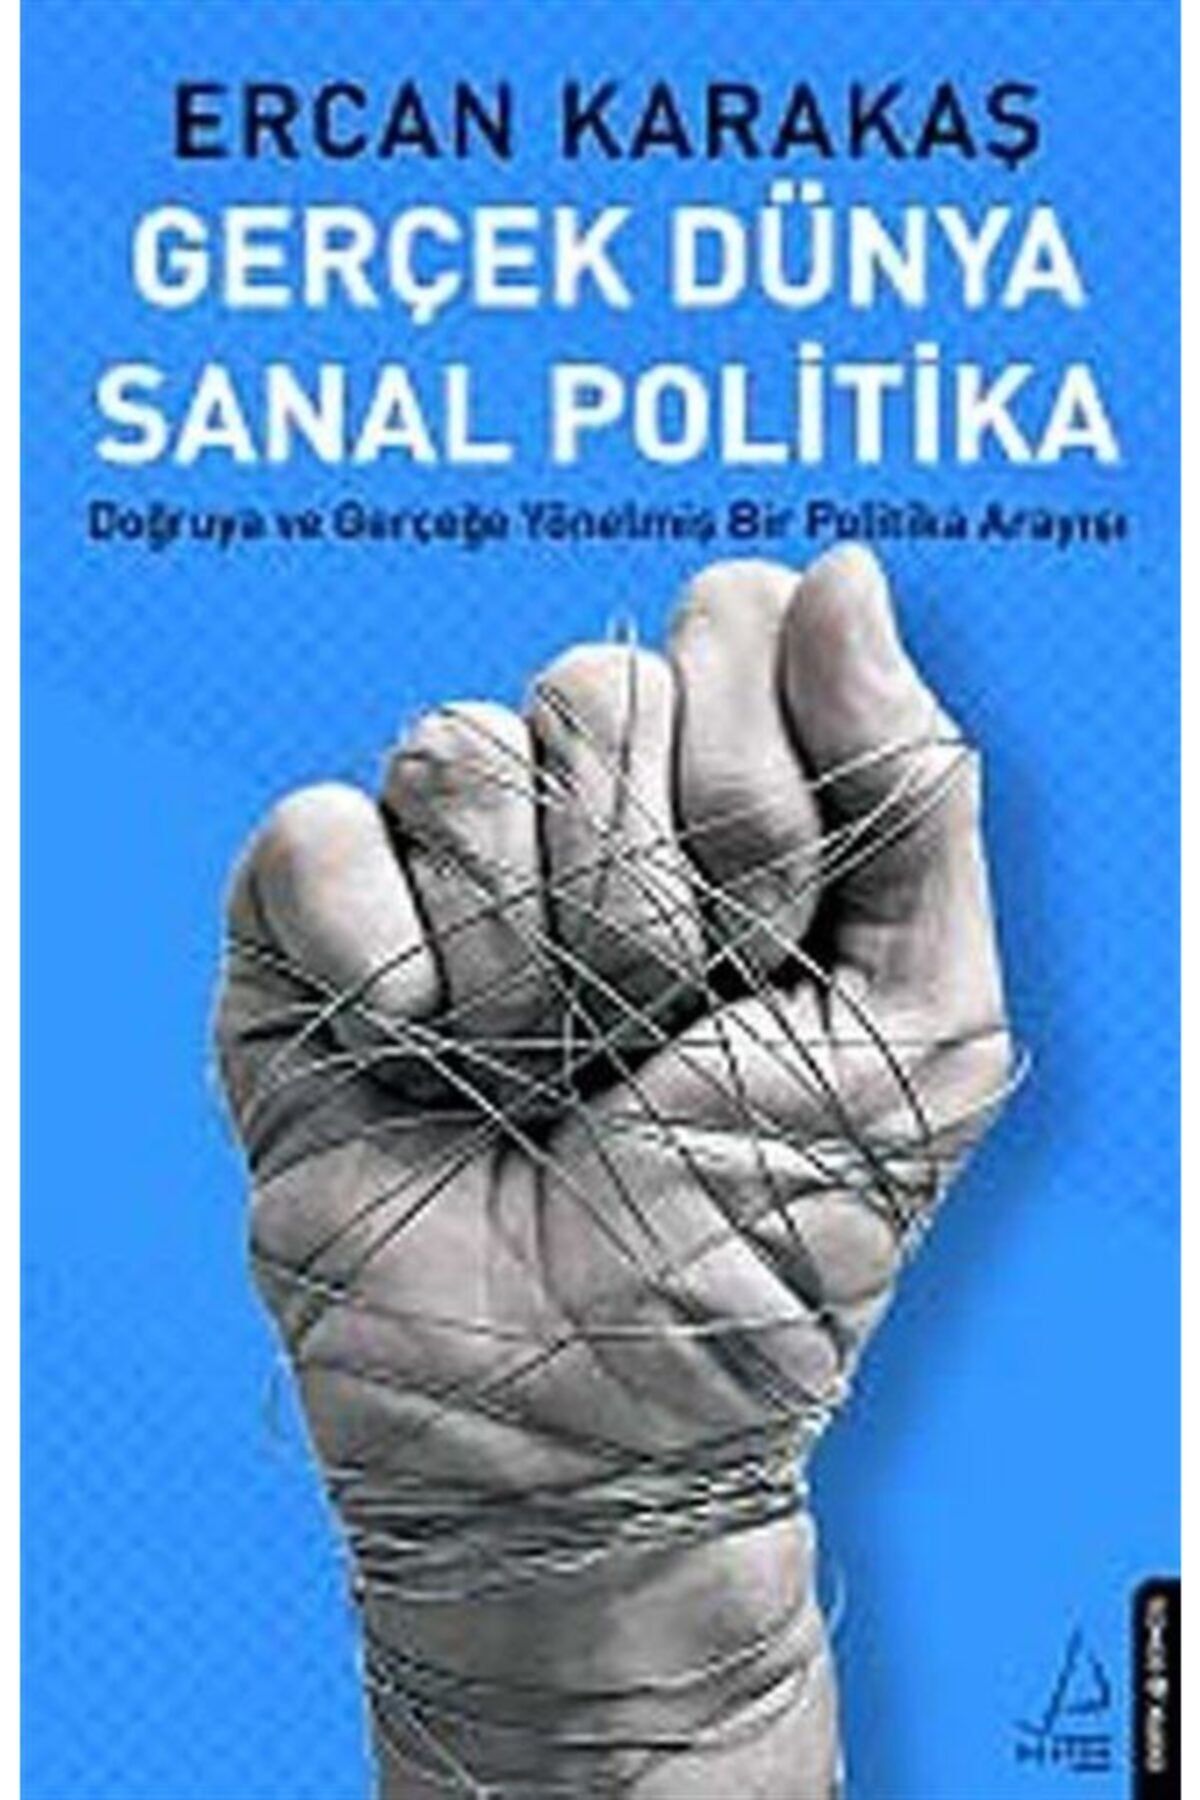 Destek Yayınları Gerçek Dünya Sanal Politika & Doğruya Ve Gerçeğe Yönelmiş Bir Politika Arayışı